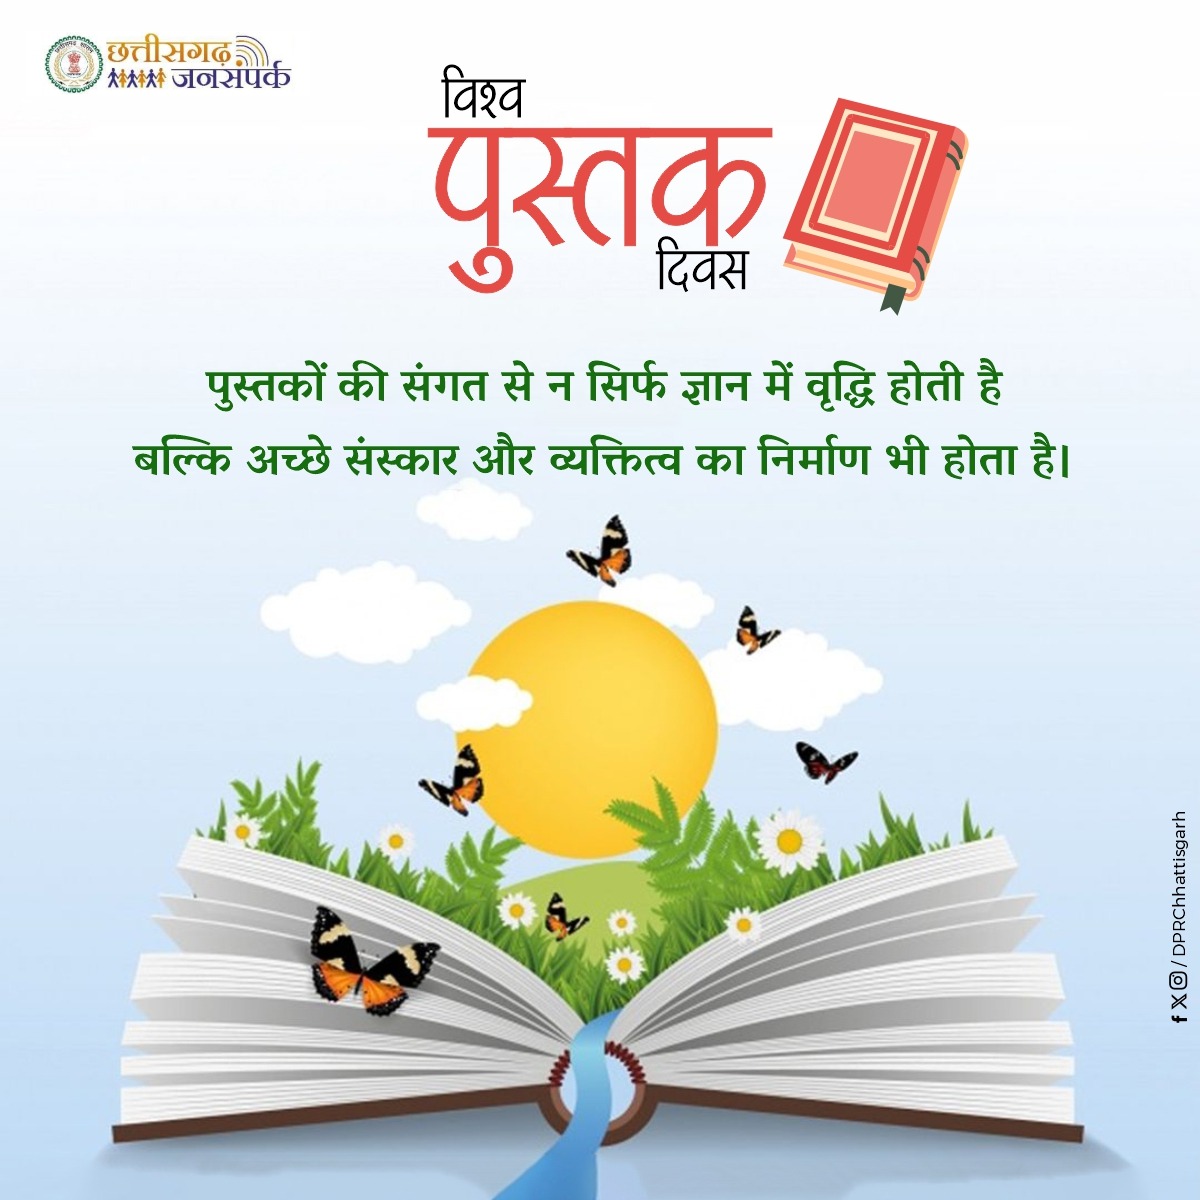 किताबें - ज्ञान की अनमोल धरोहर और संस्कृतियों का संगम होती है विश्व पुस्तक दिवस की शुभकामनाएं । #WorldBookDay